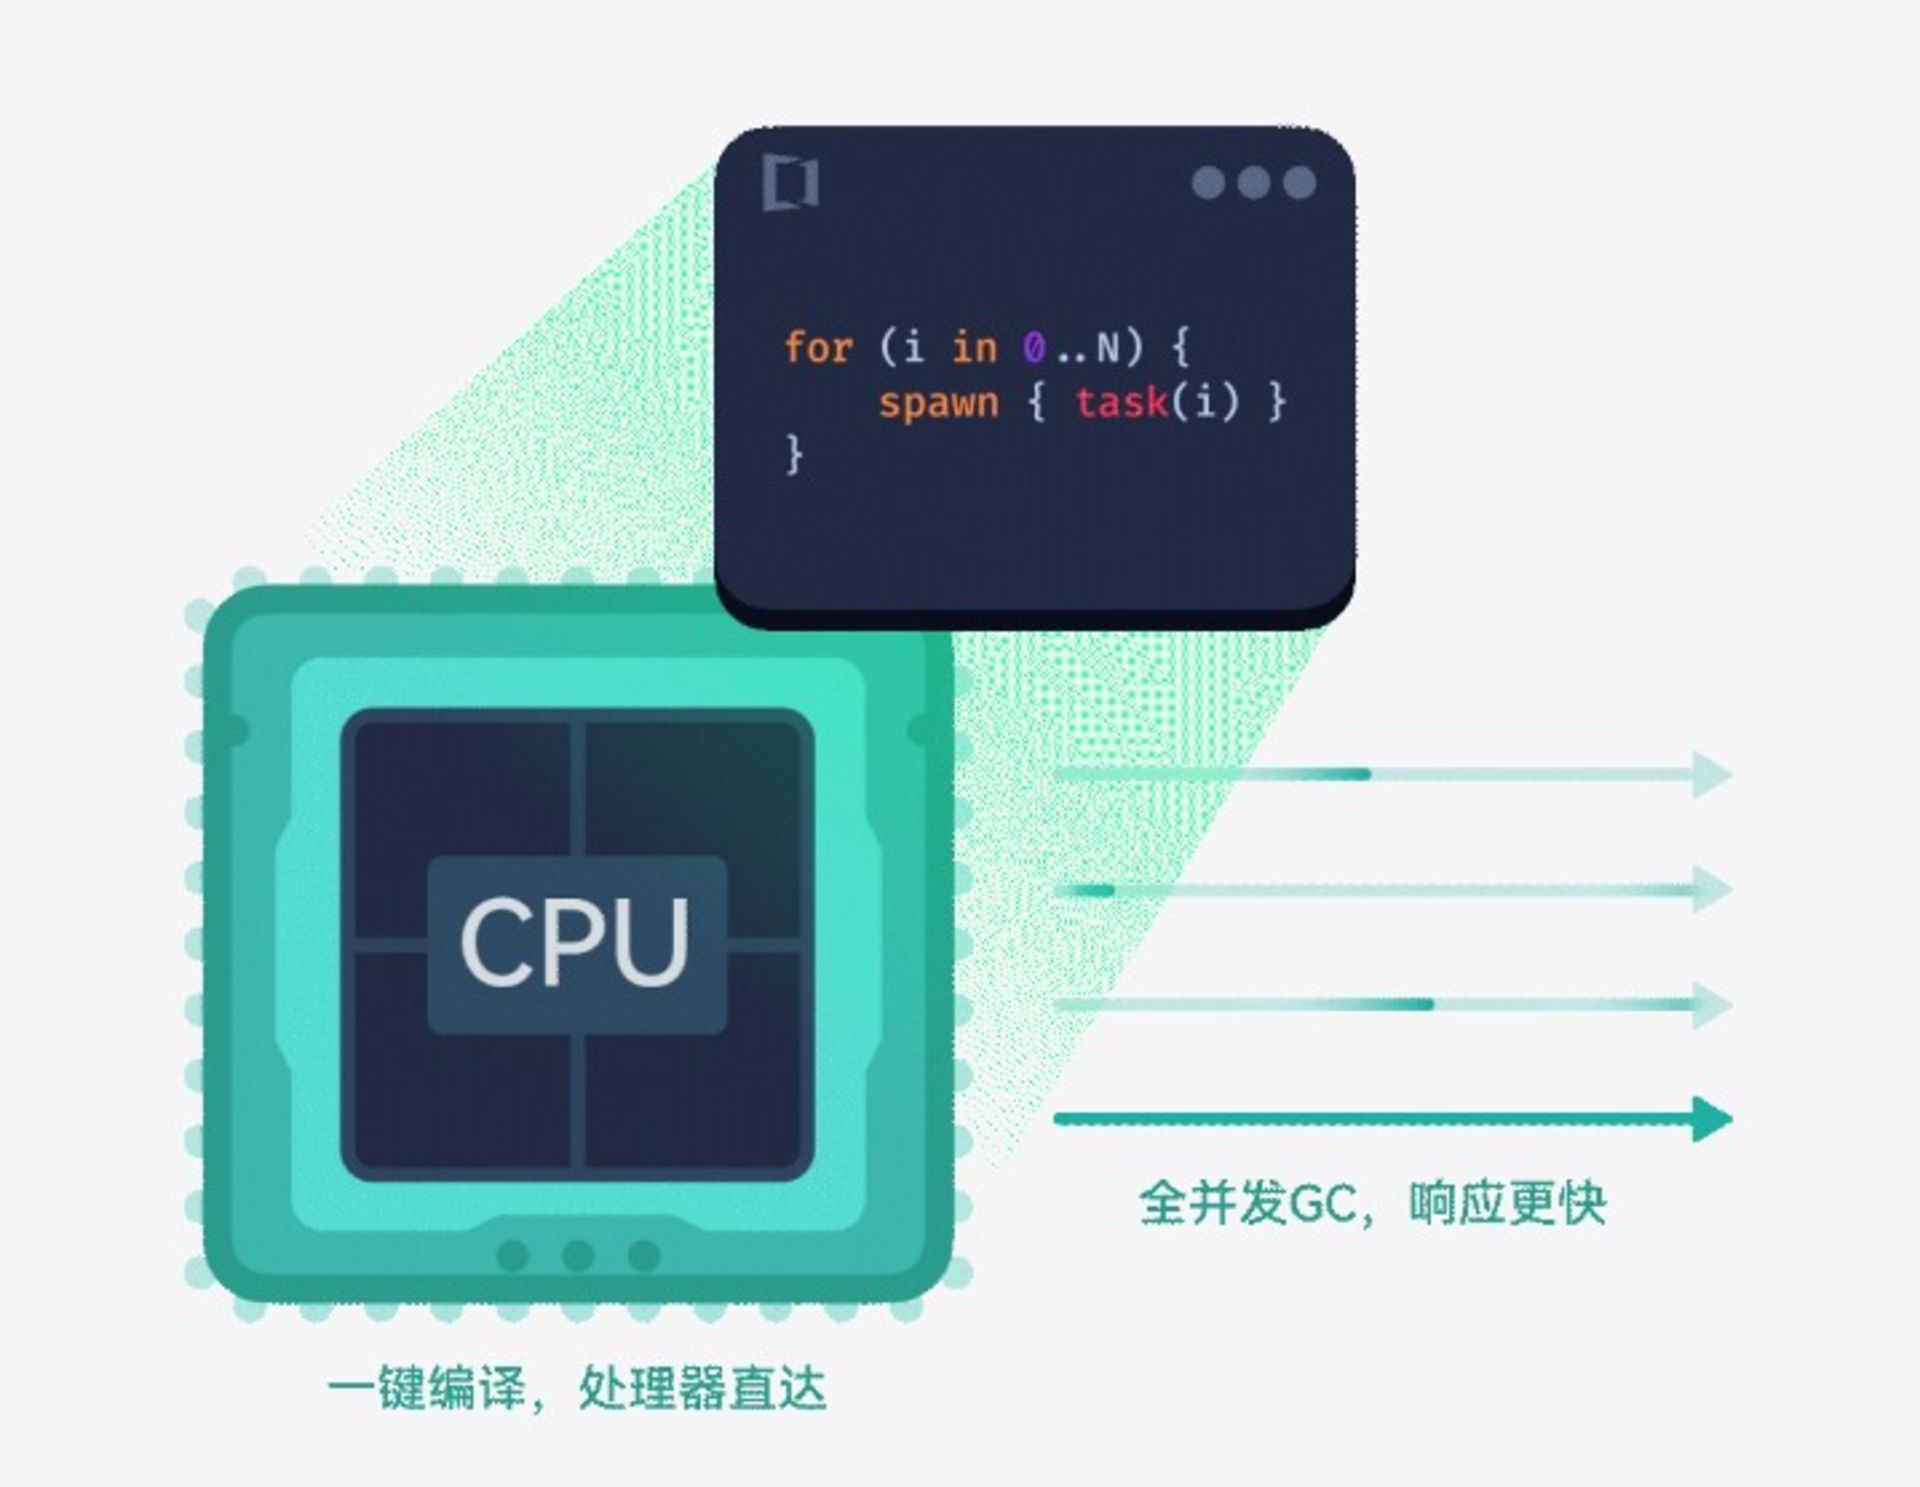 یک طرح انیمیشنی از CPU در کنار کد برنامه